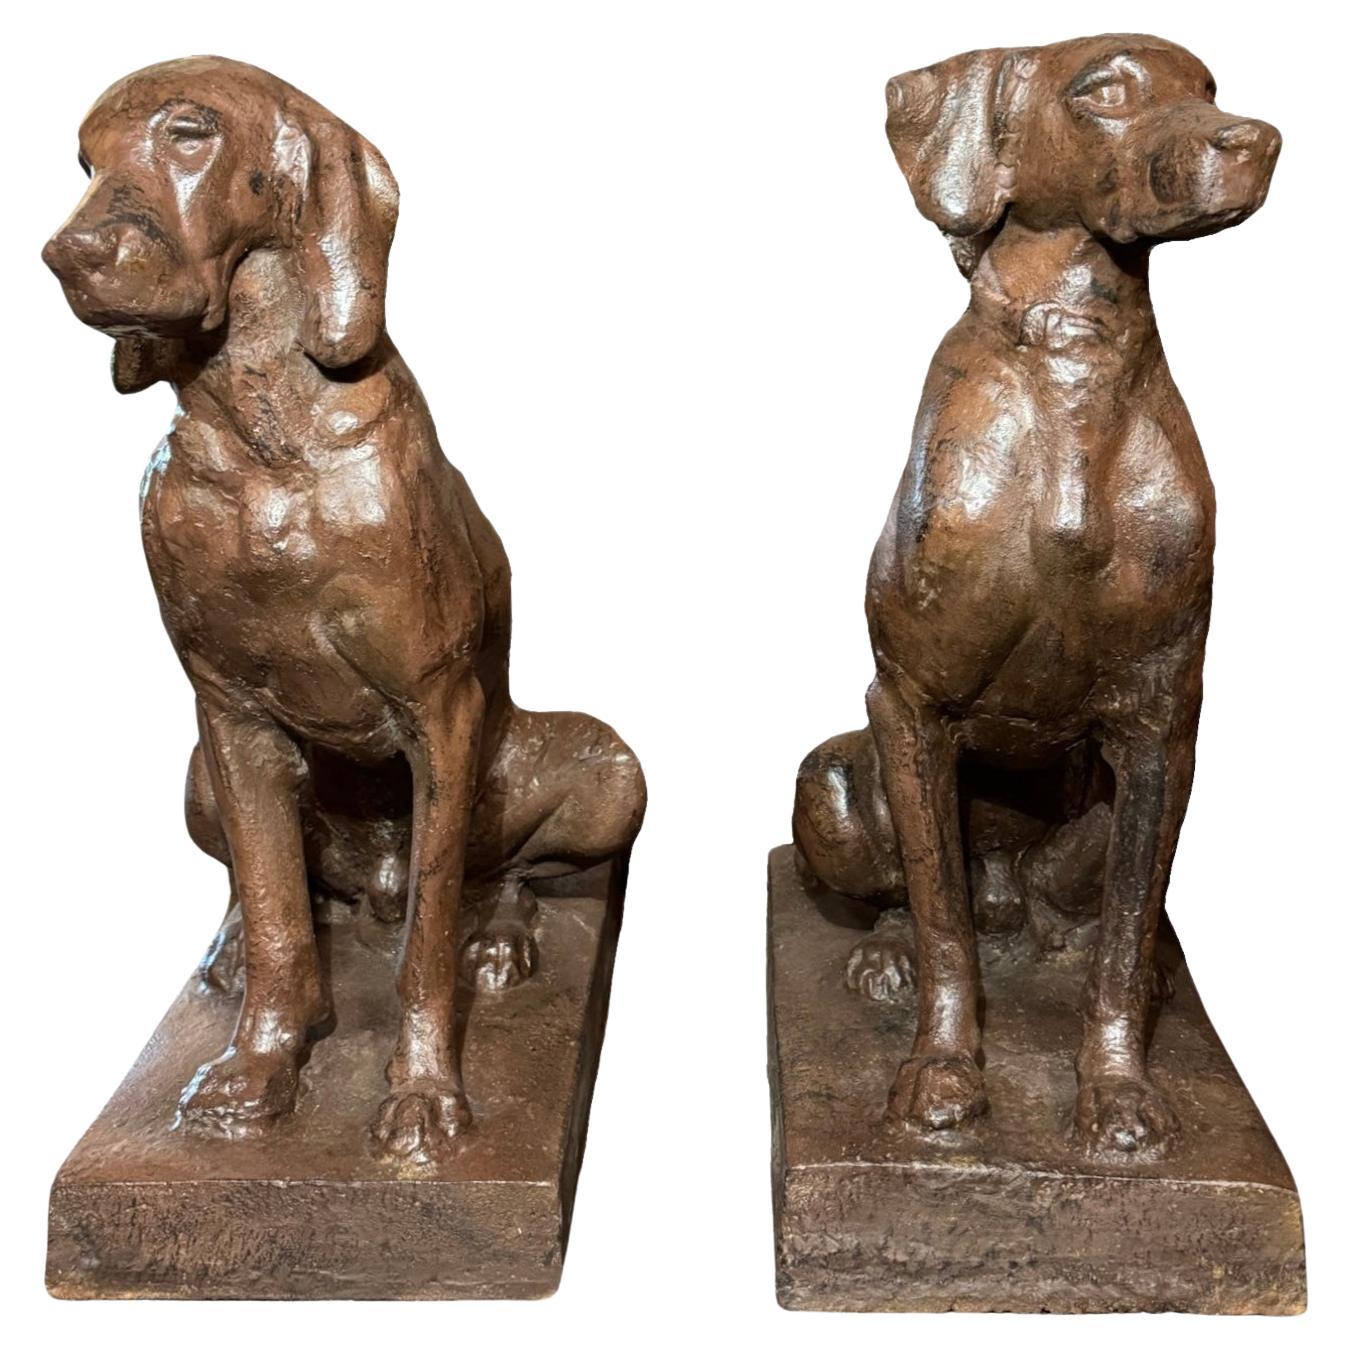 Paire de sculptures françaises de chiens